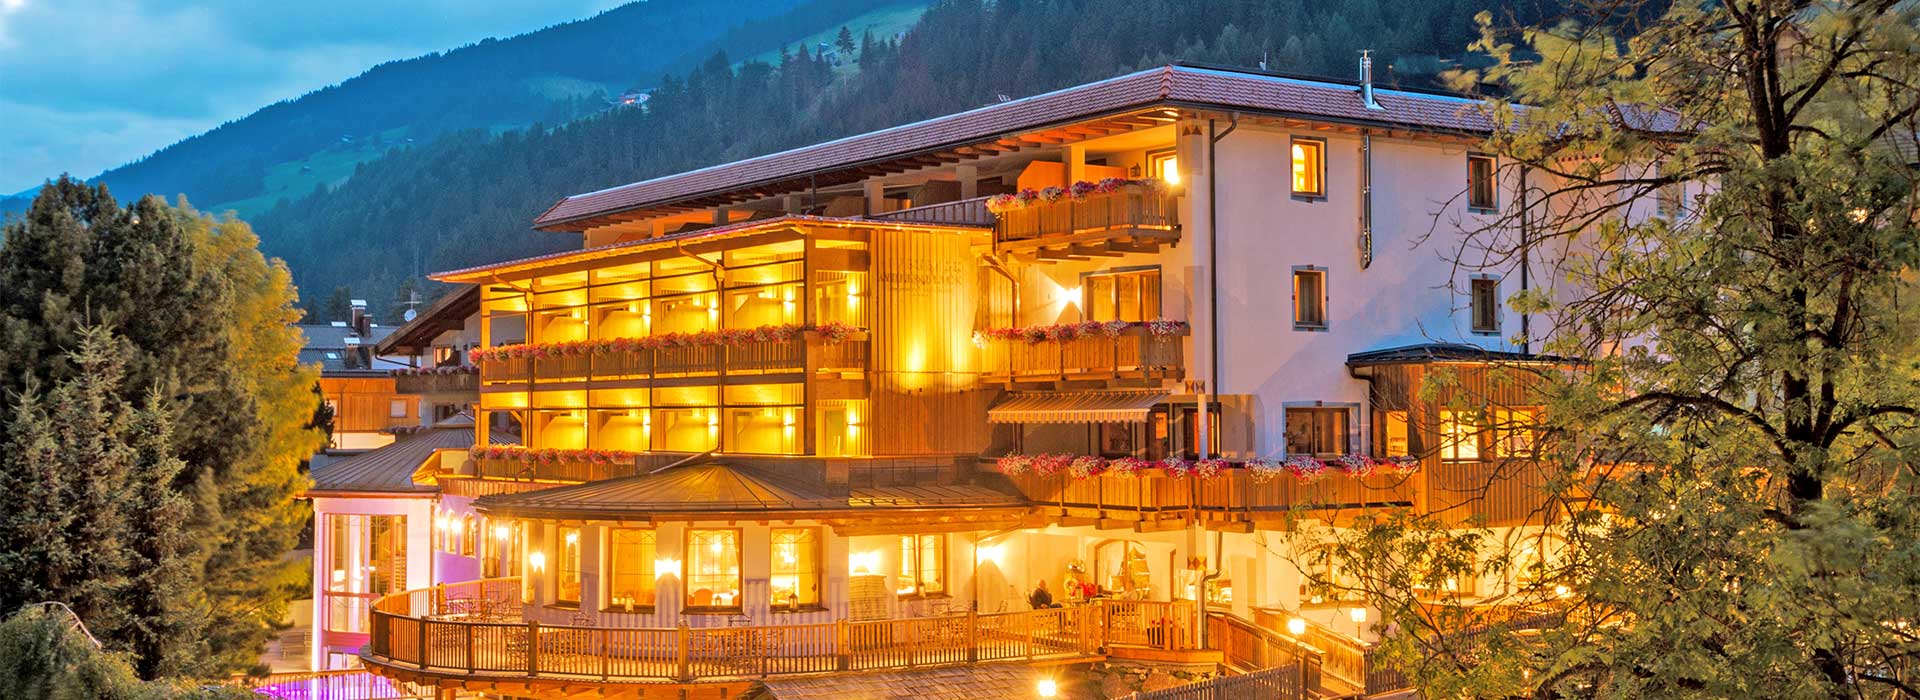 Miglior prezzo Hotel Alpenblick Sesto Trentino Alto Adige